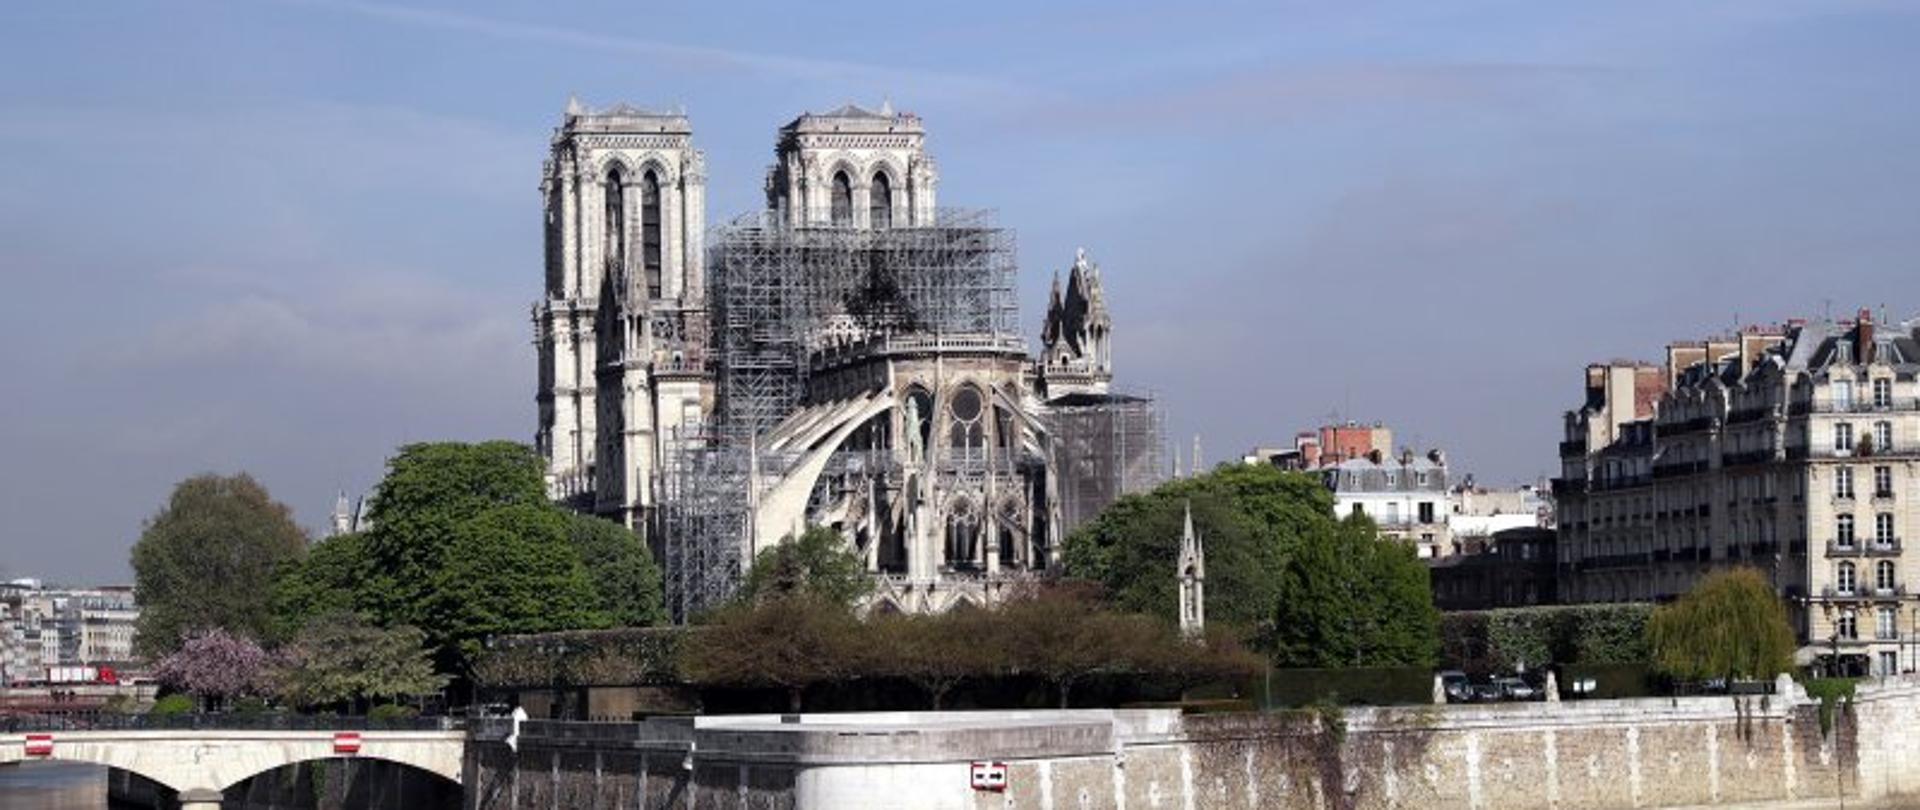 Notre Dame w Paryżu, fot. PAP/EPA/CHRISTOPHE PETIT TESSON